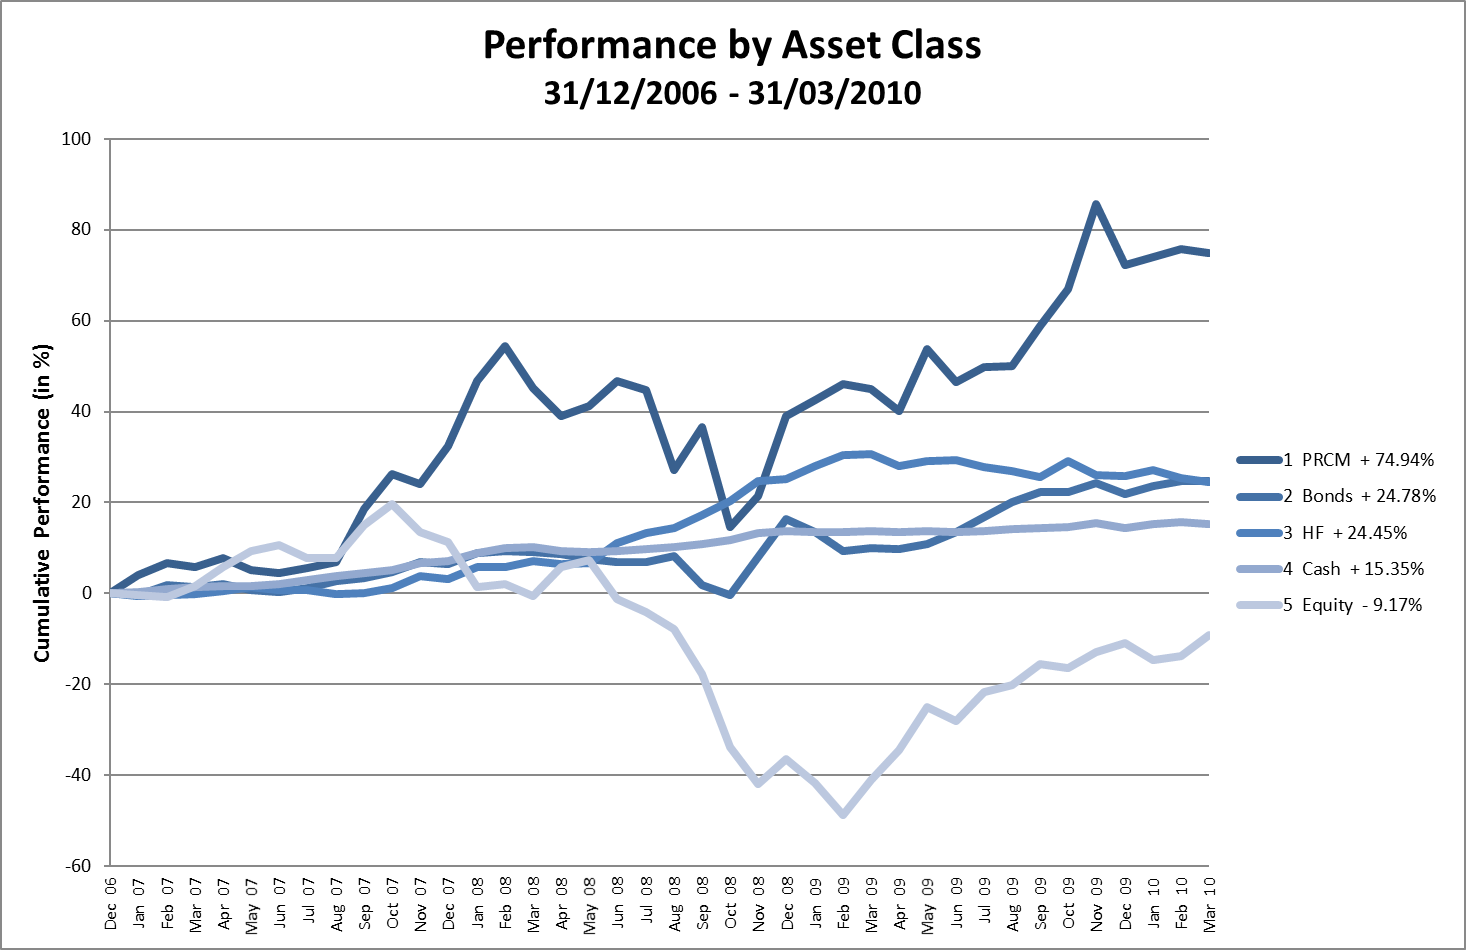 Asset Classes, Cumulative Performance in %